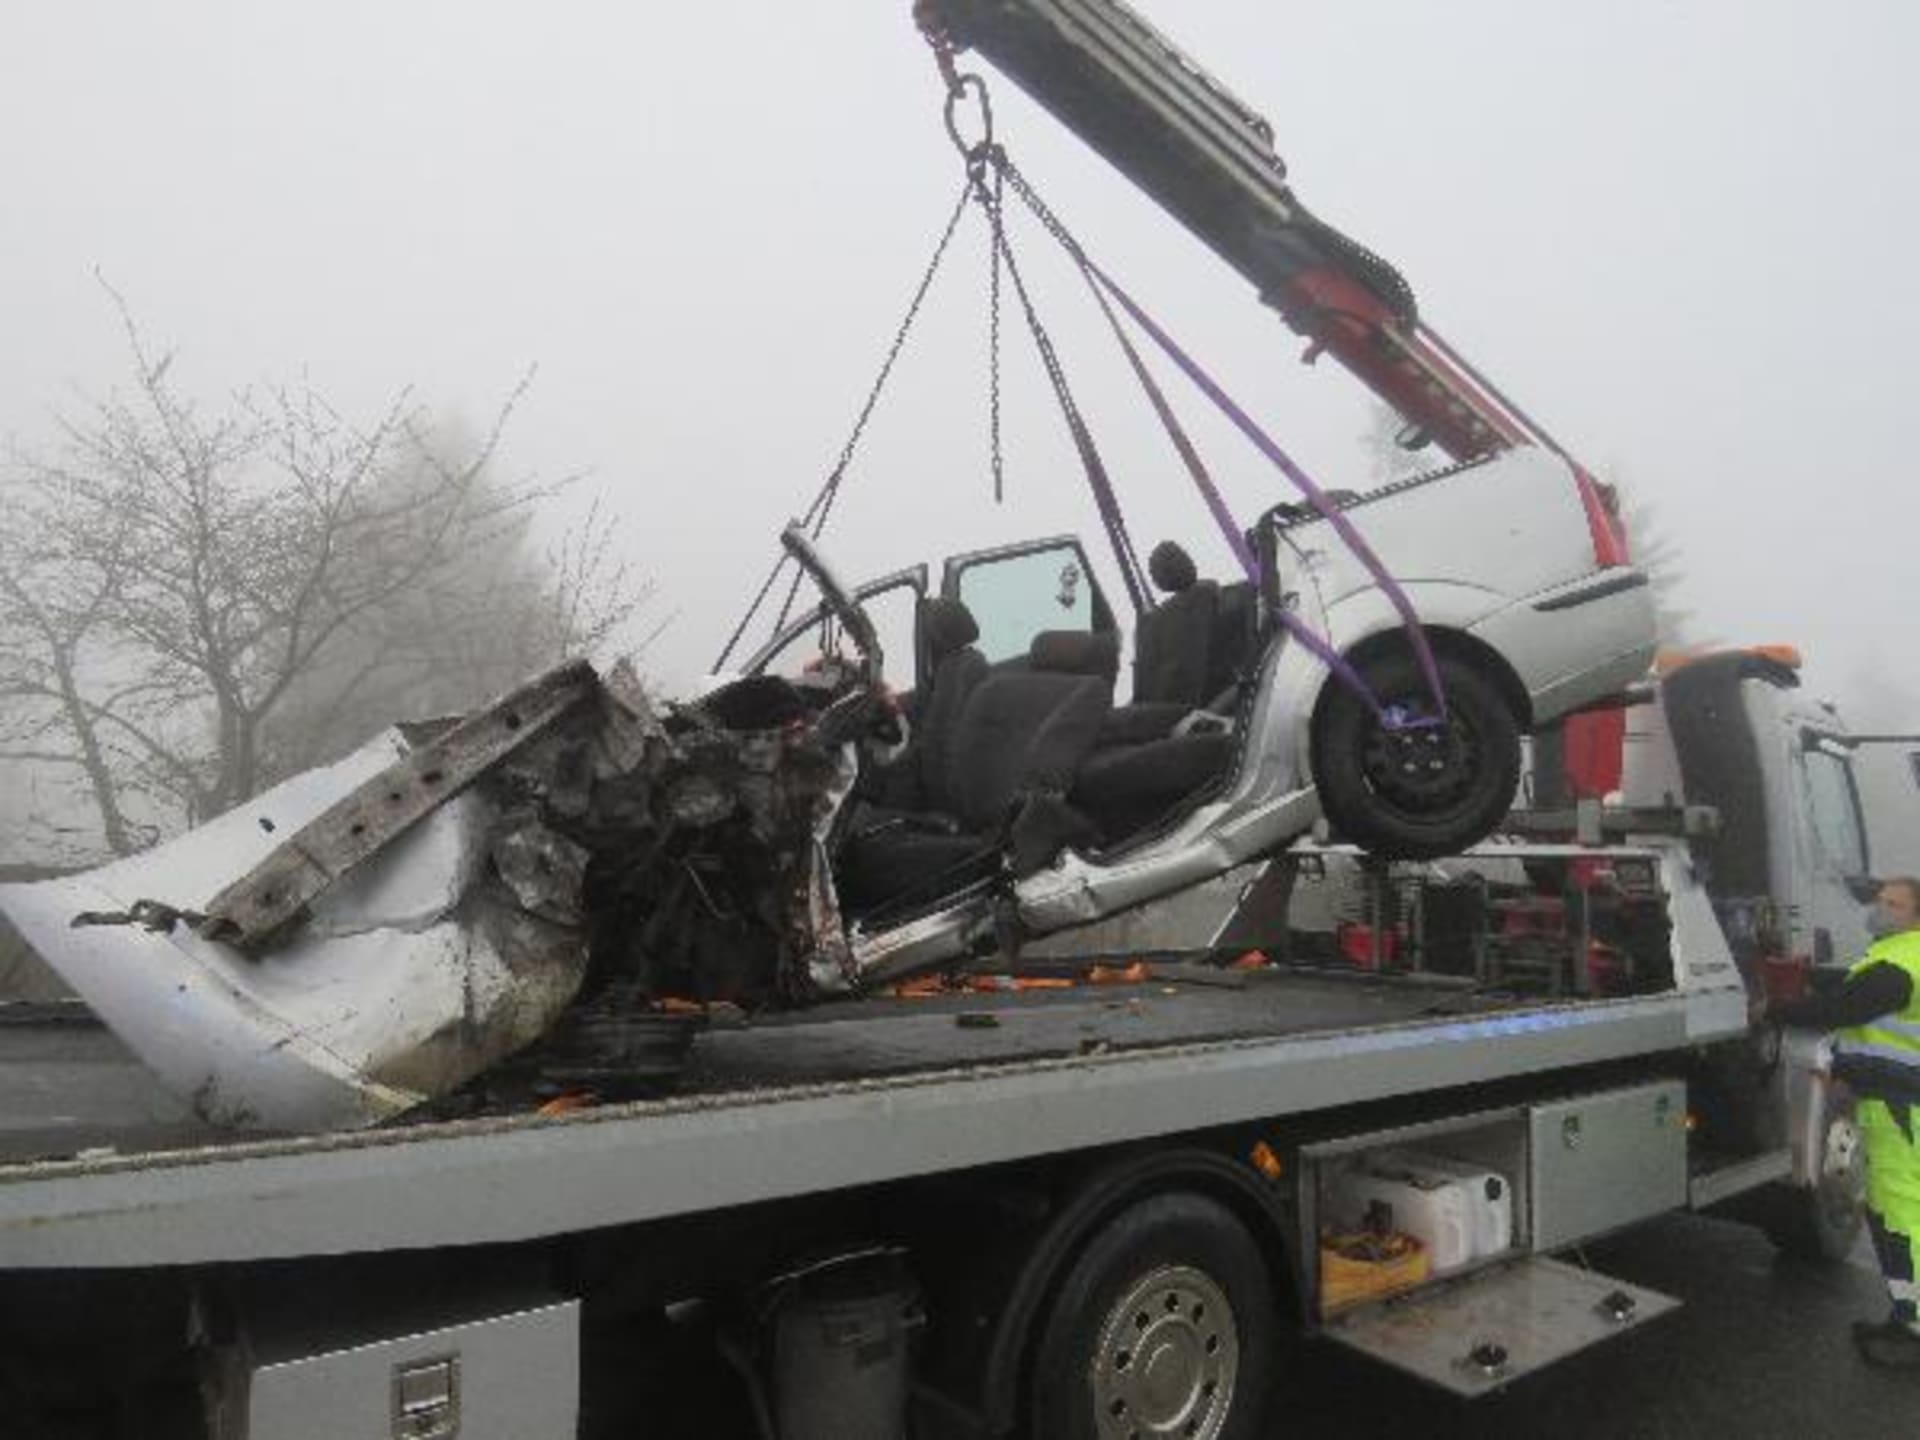 Tragická srážka osobního automobilu s nákladním vozidlem